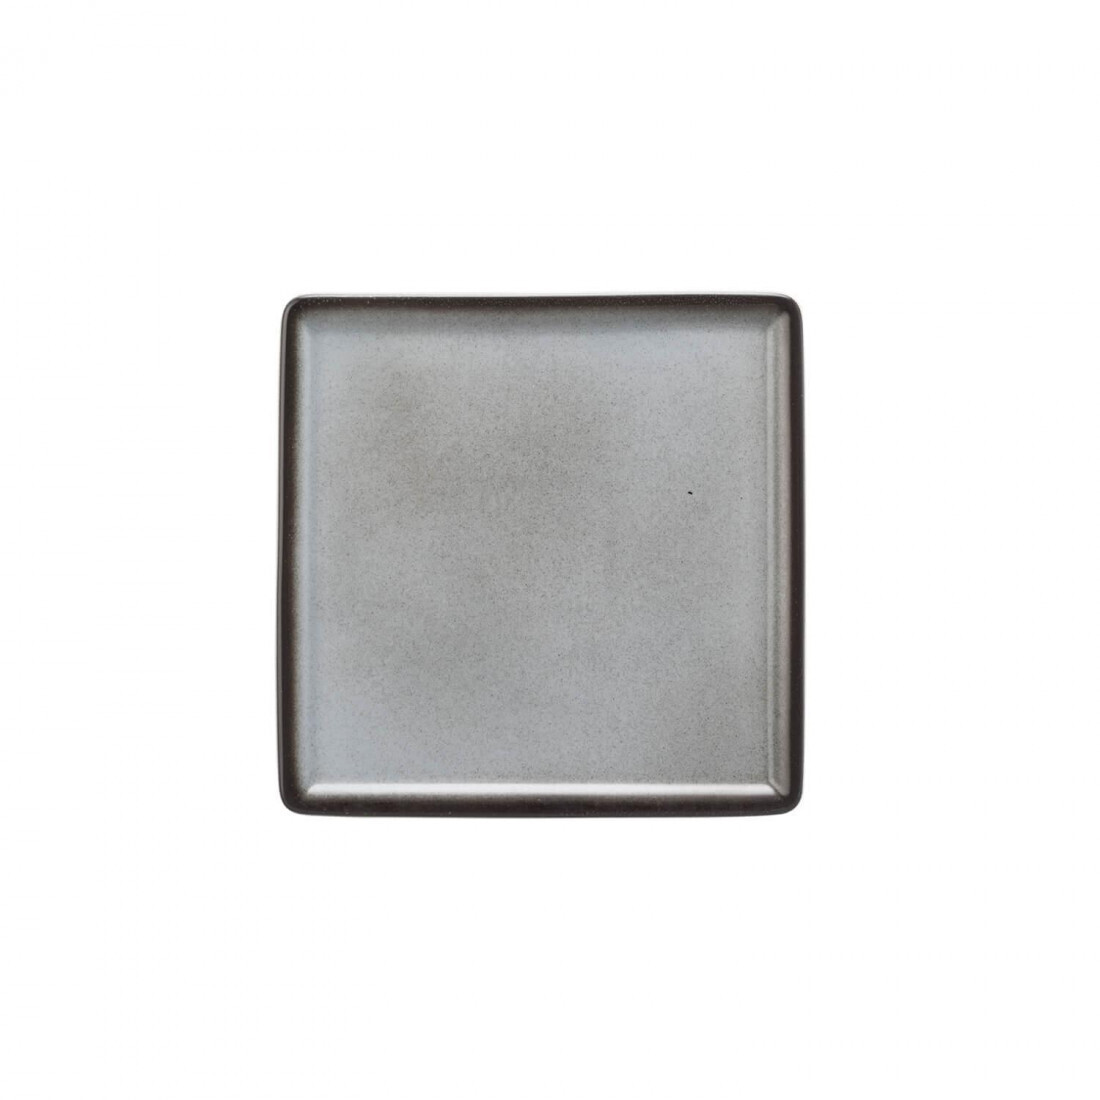 Seltmann - Buffet Gourmet Platte 5170 16x16 cm Grau